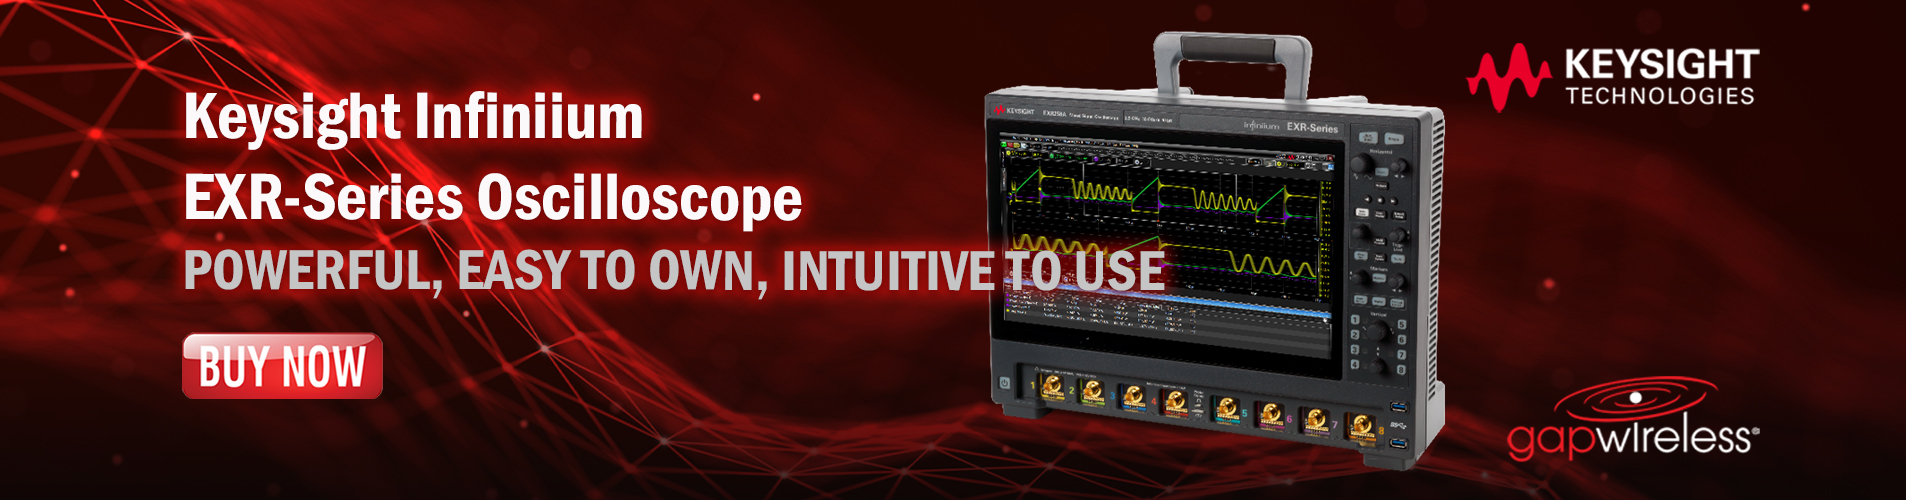 Keysight Infiniium EXR-Series Oscilloscope Announcement Banner